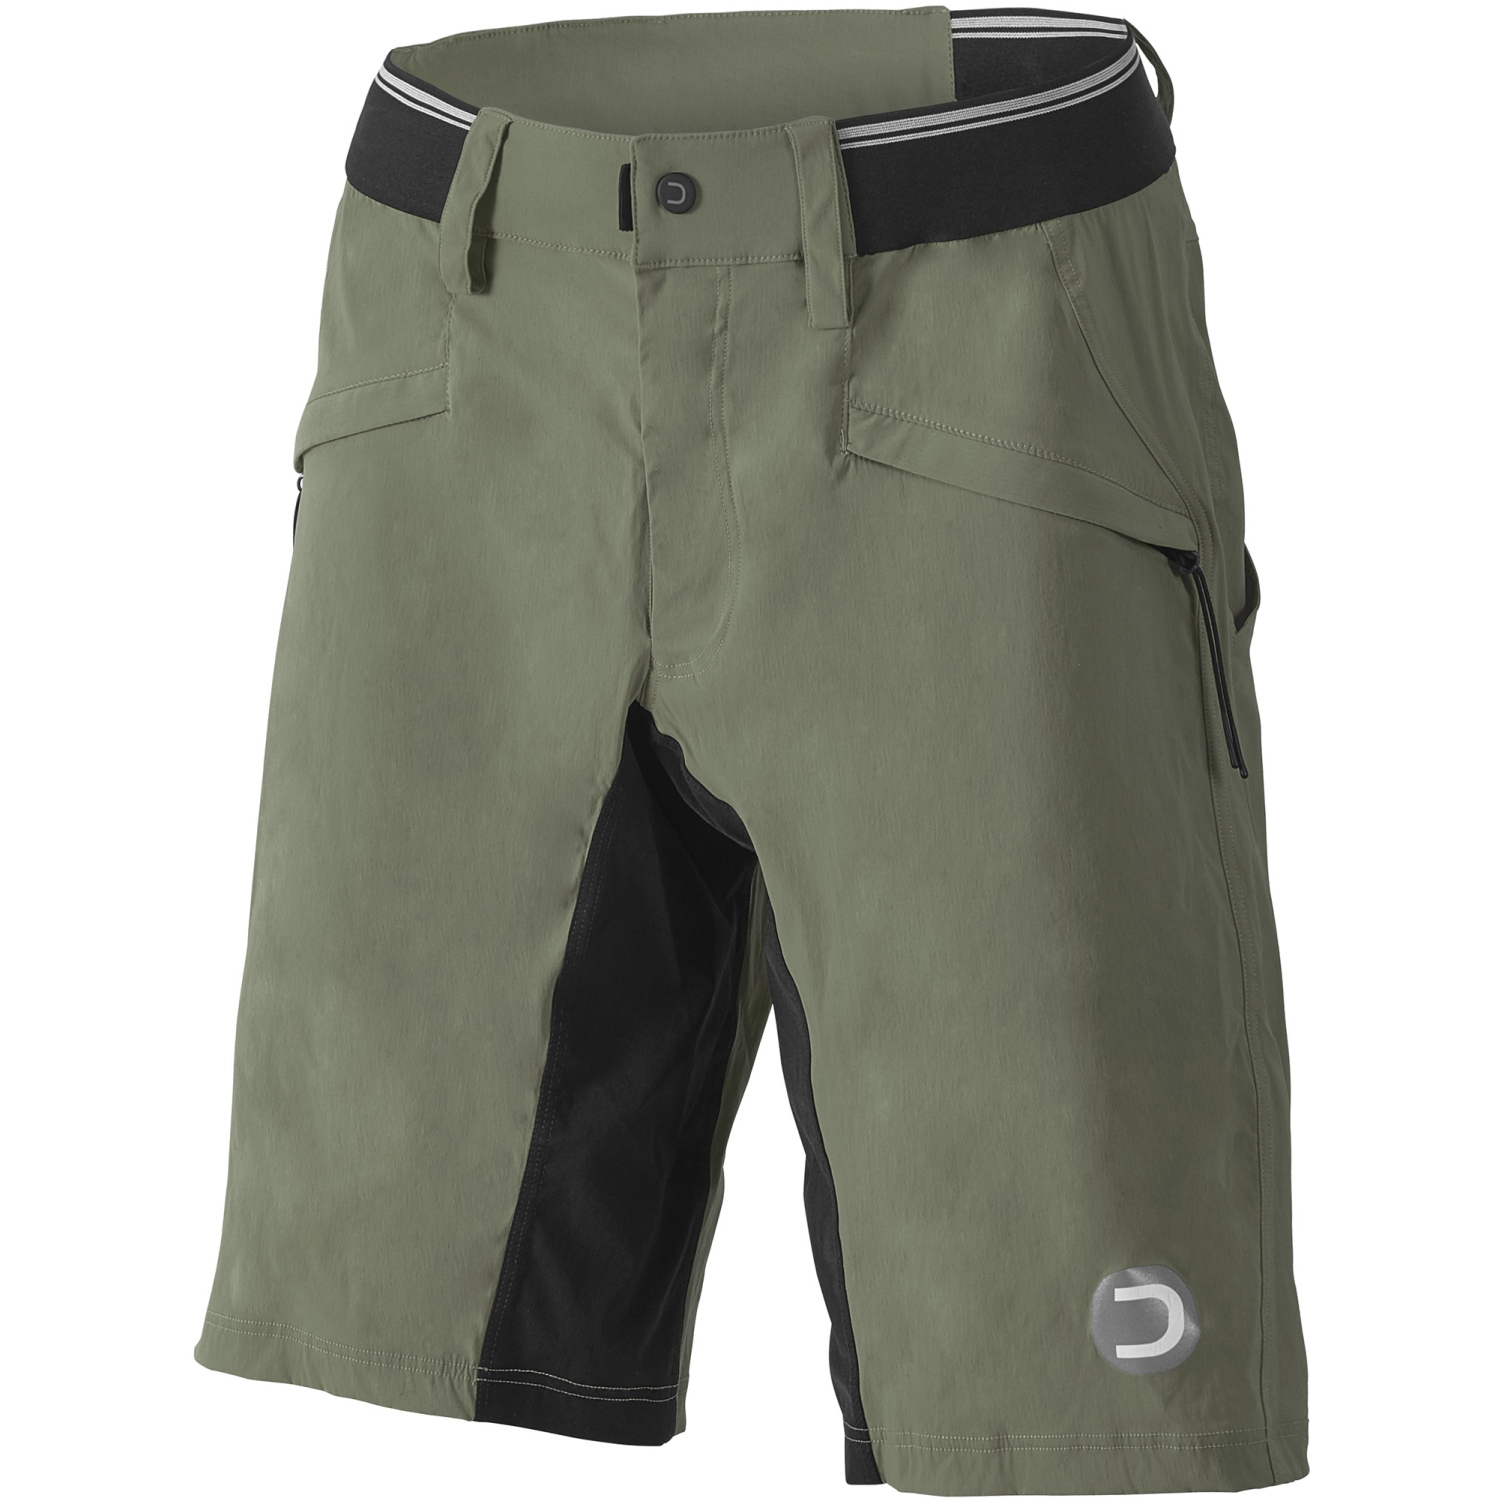 Produktbild von Dotout Iron Bike-Shorts Herren - sage green